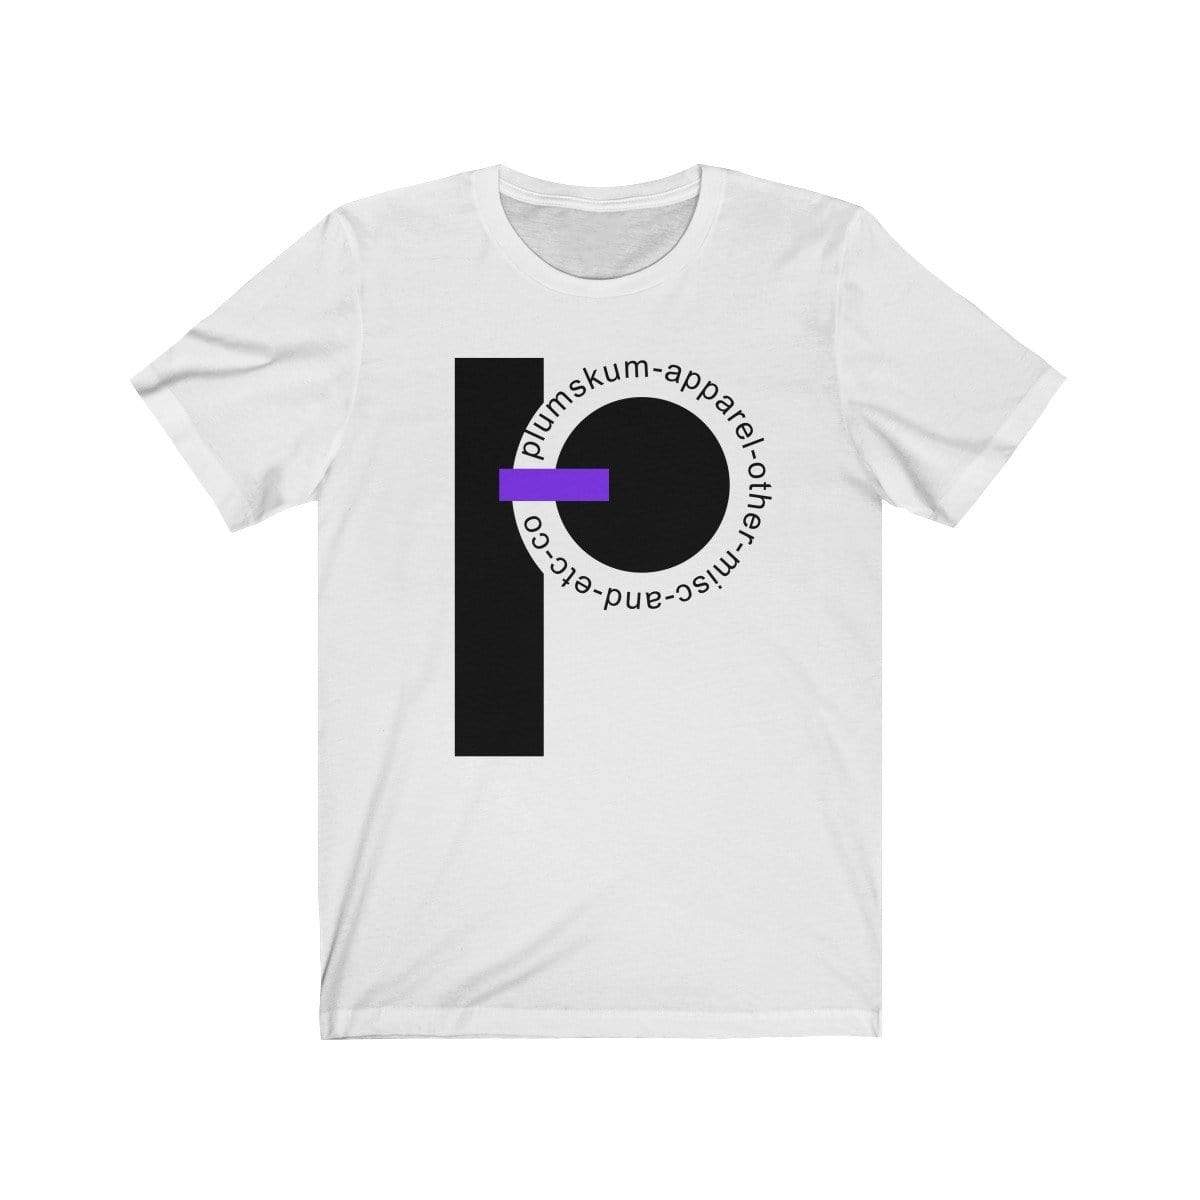 Printify T-Shirt White / XS Plumskum  Etc. Co. TShirt